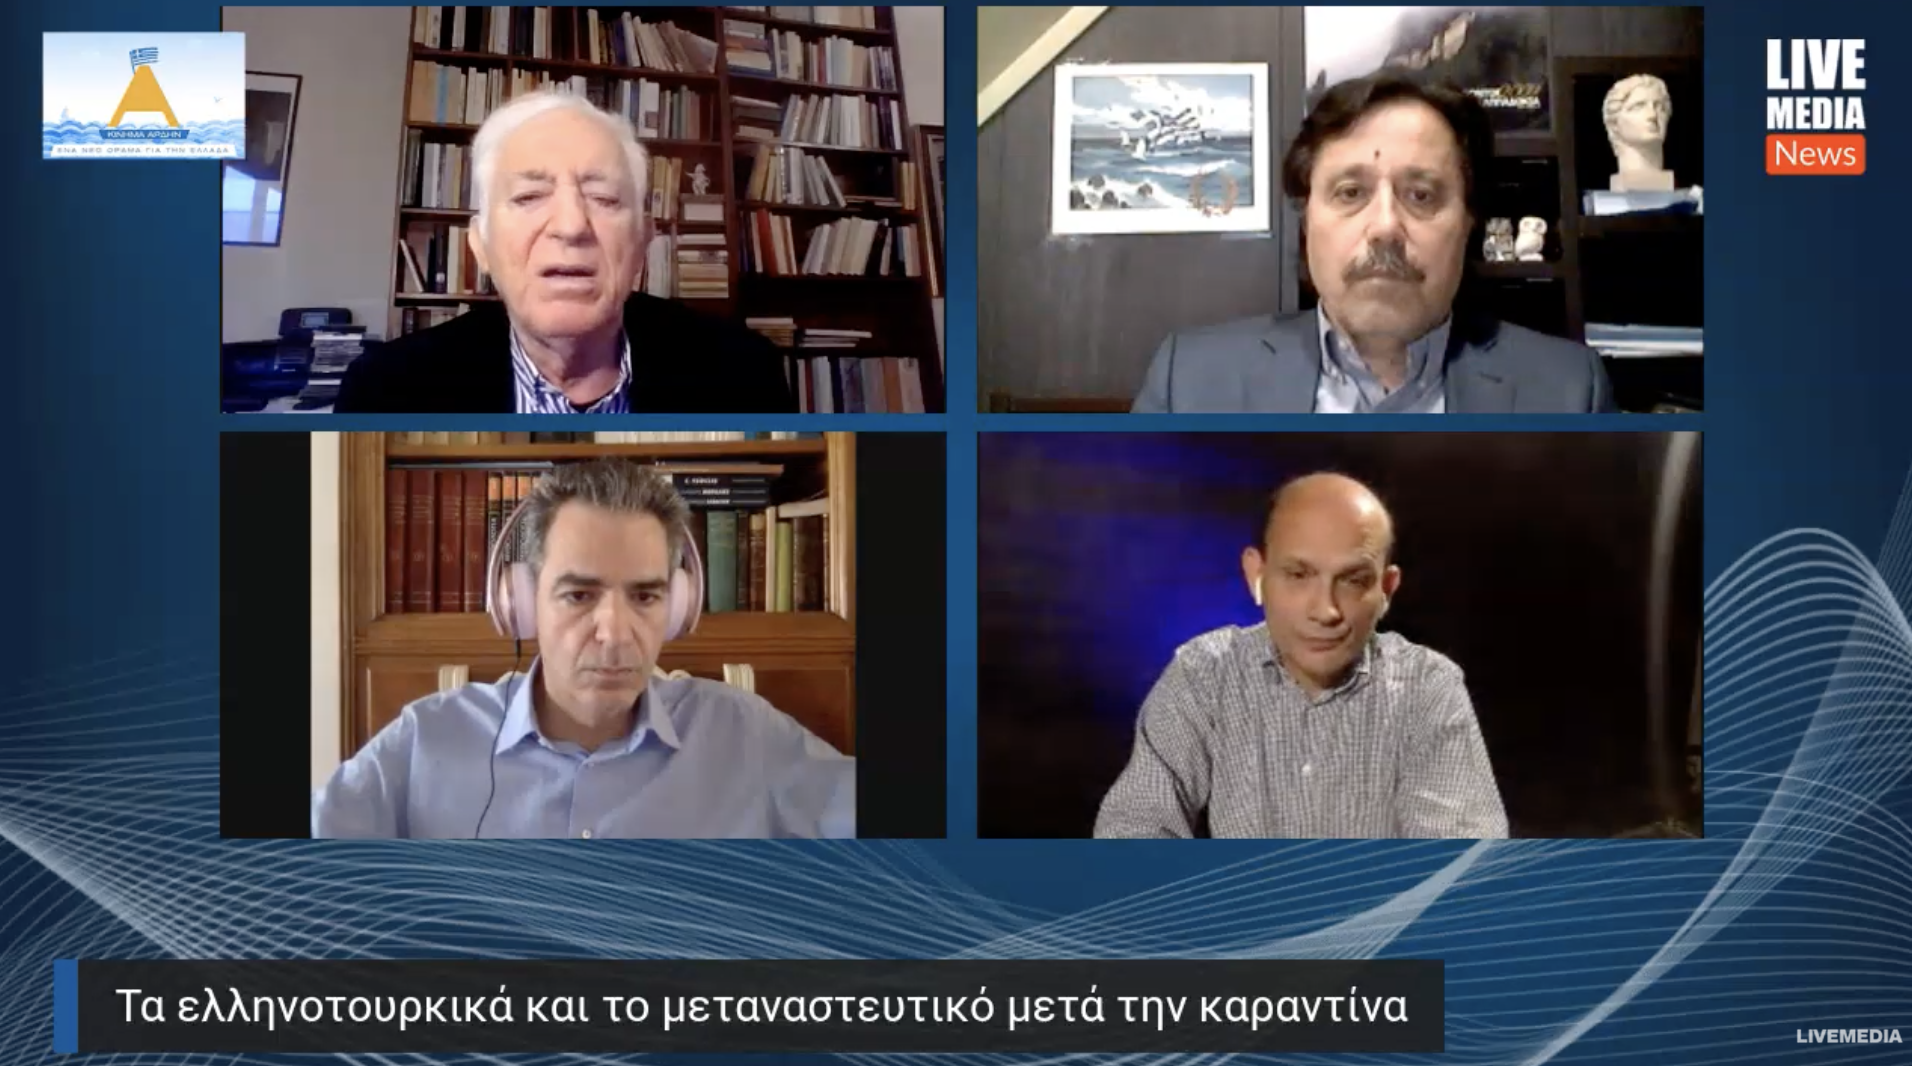 Η βοήθεια που ζήτησε ο Χάφταρ από την Ελλάδα και το αποτέλεσμα! Βίντεο από τη συζήτηση στο ΑΡΔΗΝ